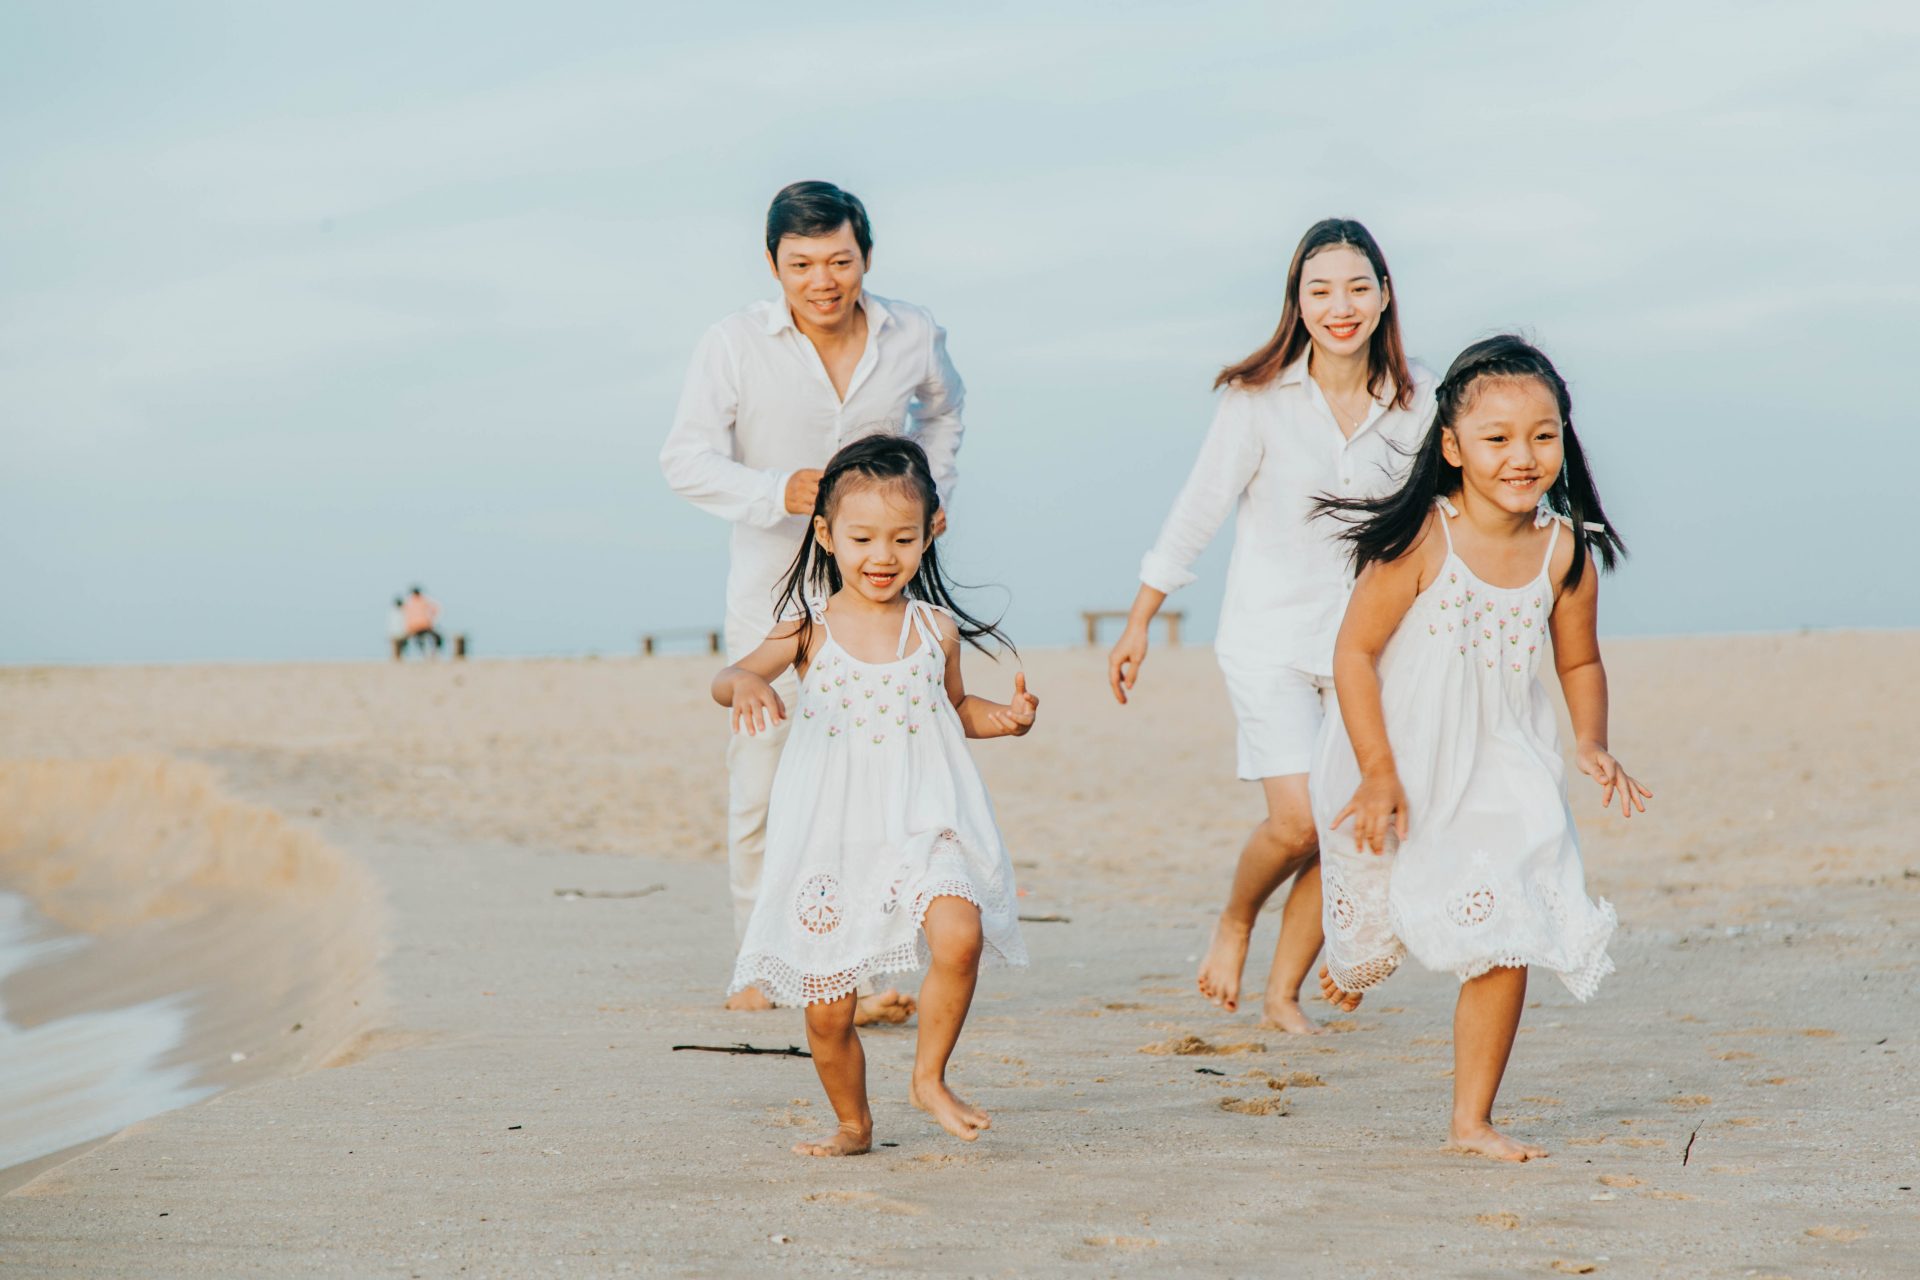 Hình ảnh của một gia đình tại bãi biển luôn là bức tranh đẹp, một kỷ niệm khó quên. Chụp ảnh gia đình cùng thưởng thức không khí biển xanh, cát trắng và nắng ấm chắc chắn sẽ làm cho bức ảnh của gia đình bạn thêm sinh động và đẹp đẽ hơn bao giờ hết. Cùng đến và trải nghiệm nhé!